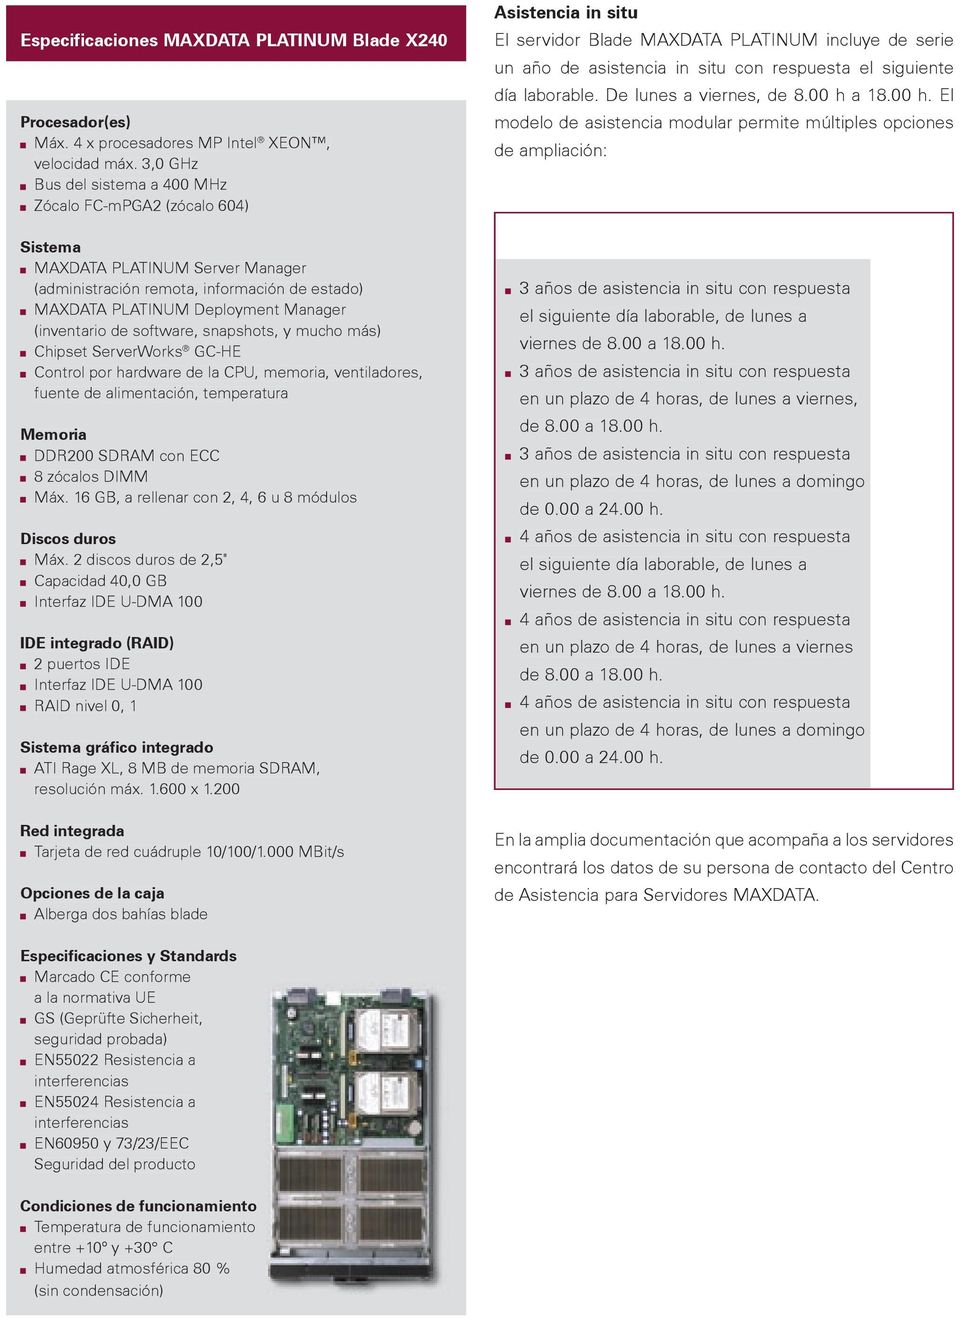 de software, snapshots, y mucho más) Chipset ServerWorks GC-HE Control por hardware de la CPU, memoria, ventiladores, fuente de alimentación, temperatura Memoria DDR200 SDRAM con ECC 8 zócalos DIMM